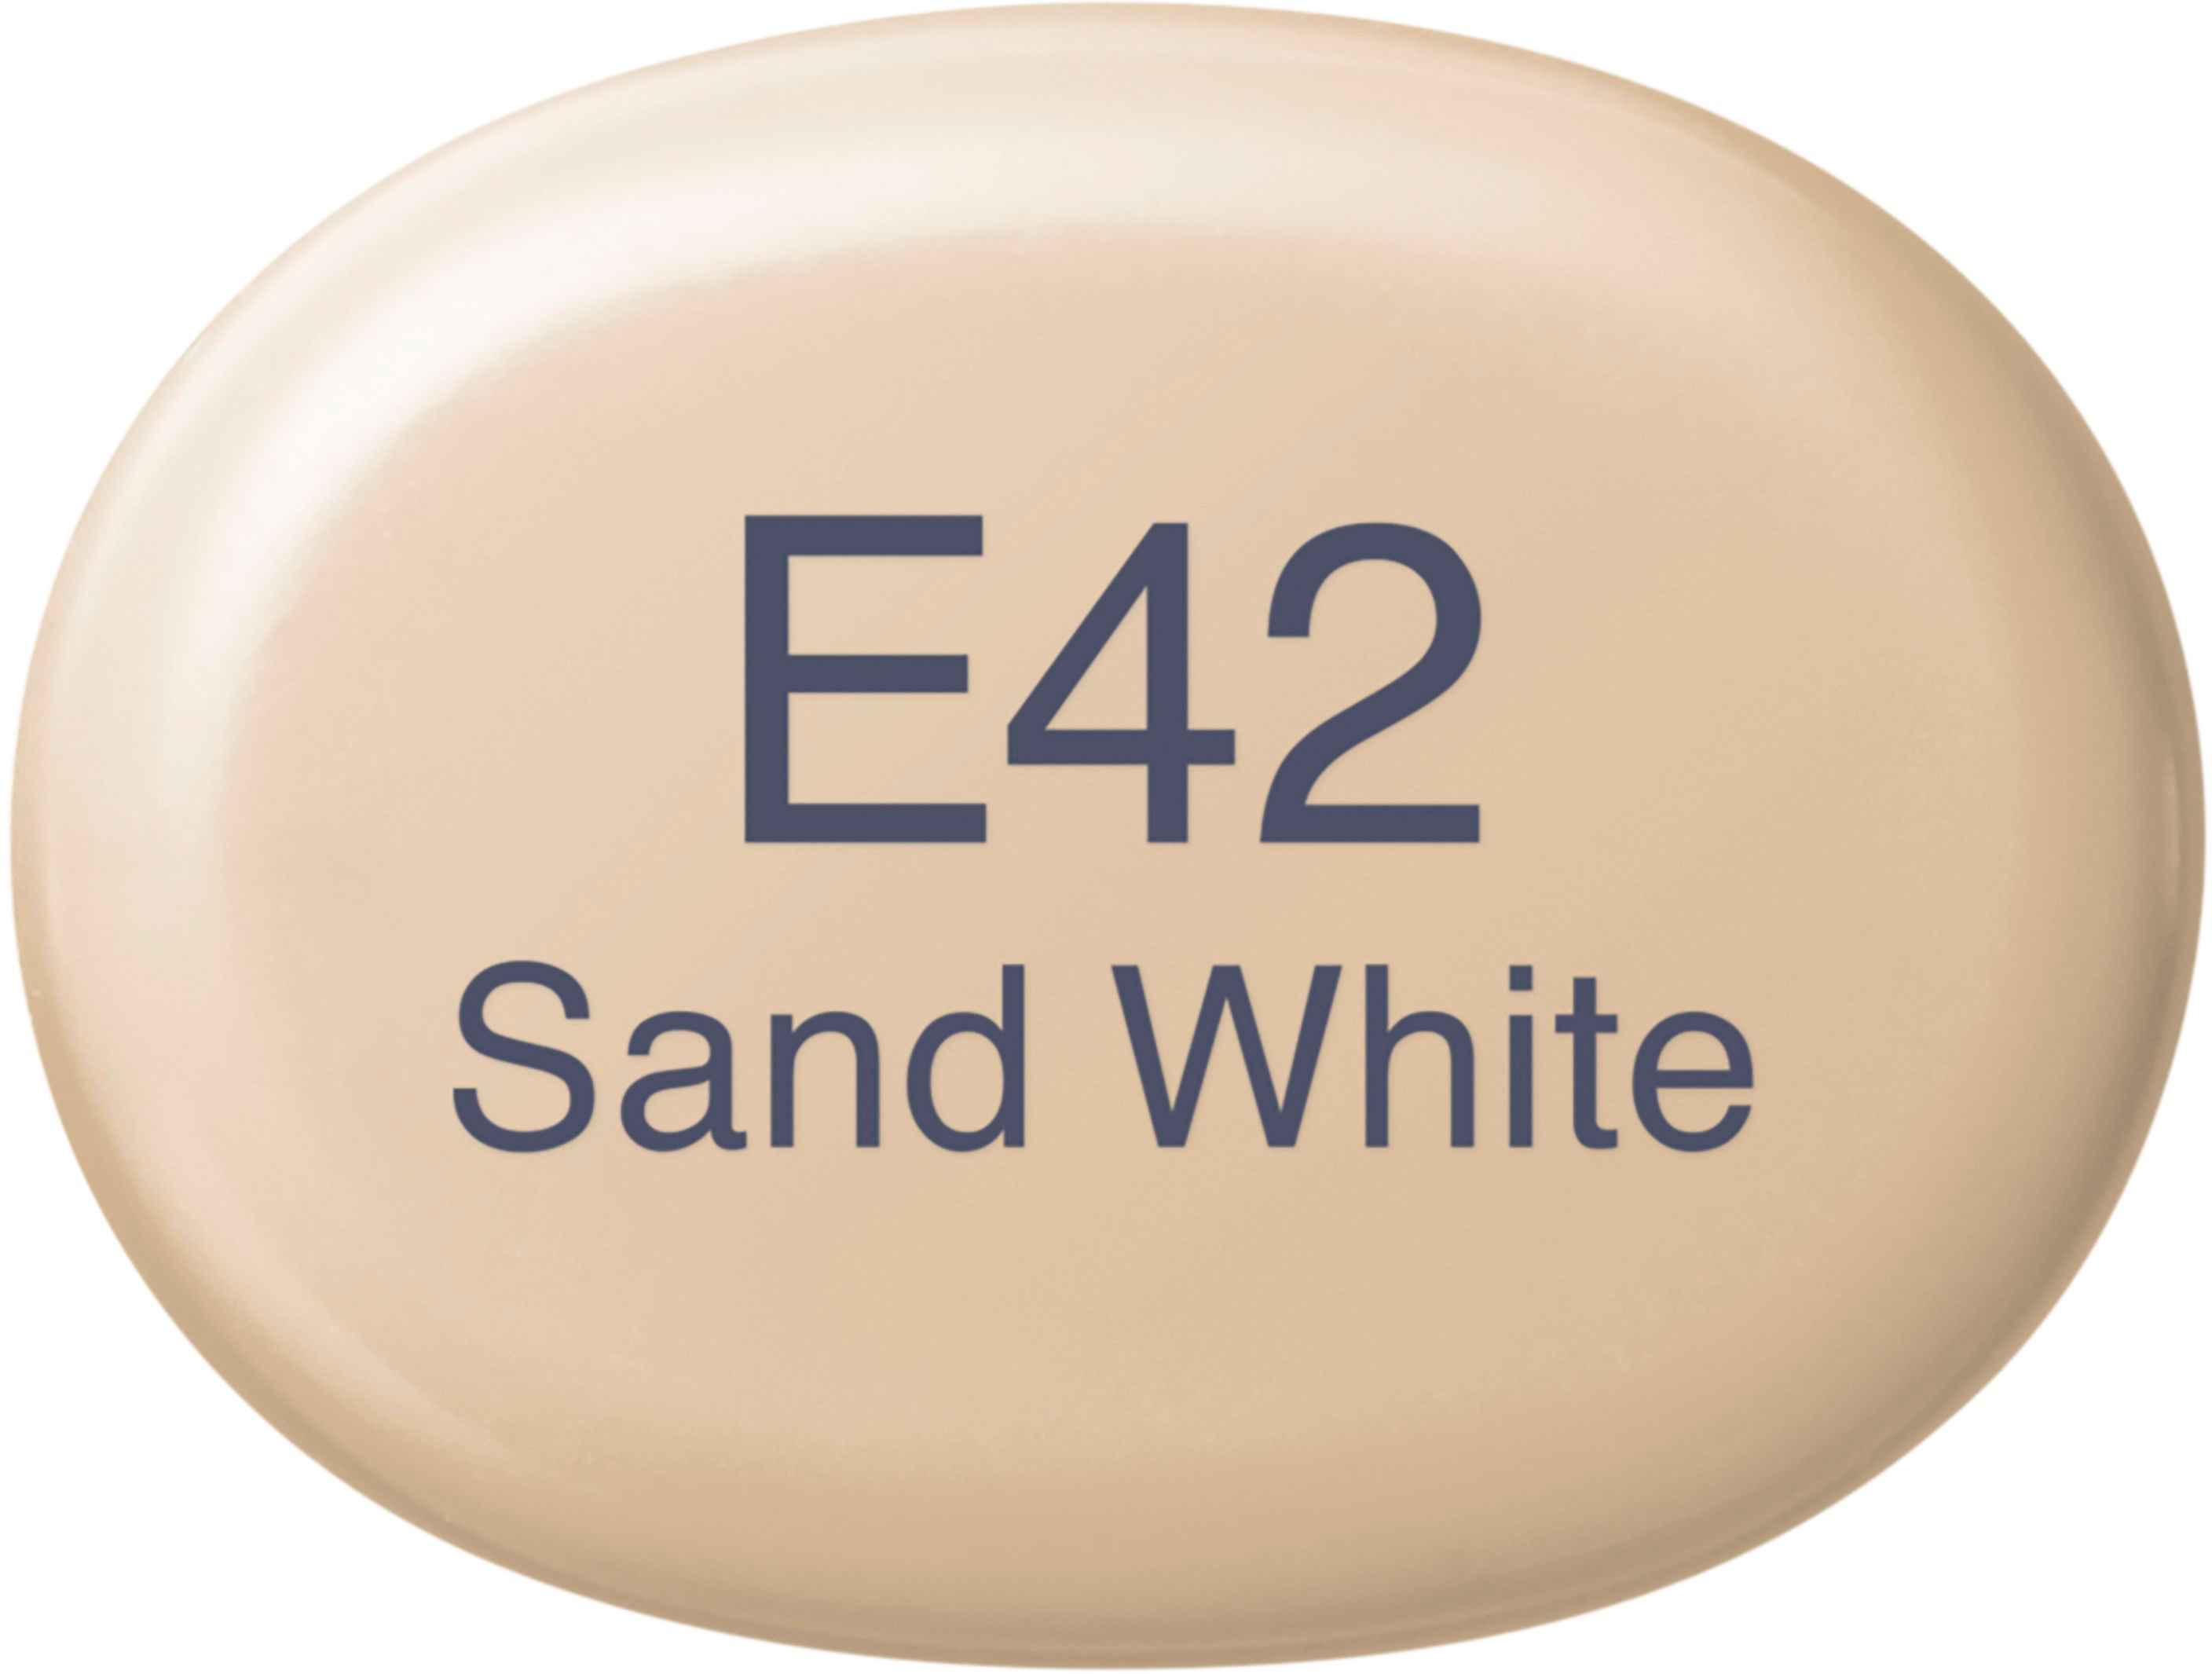 COPIC Marker Sketch 21075329 E42 - Sand White